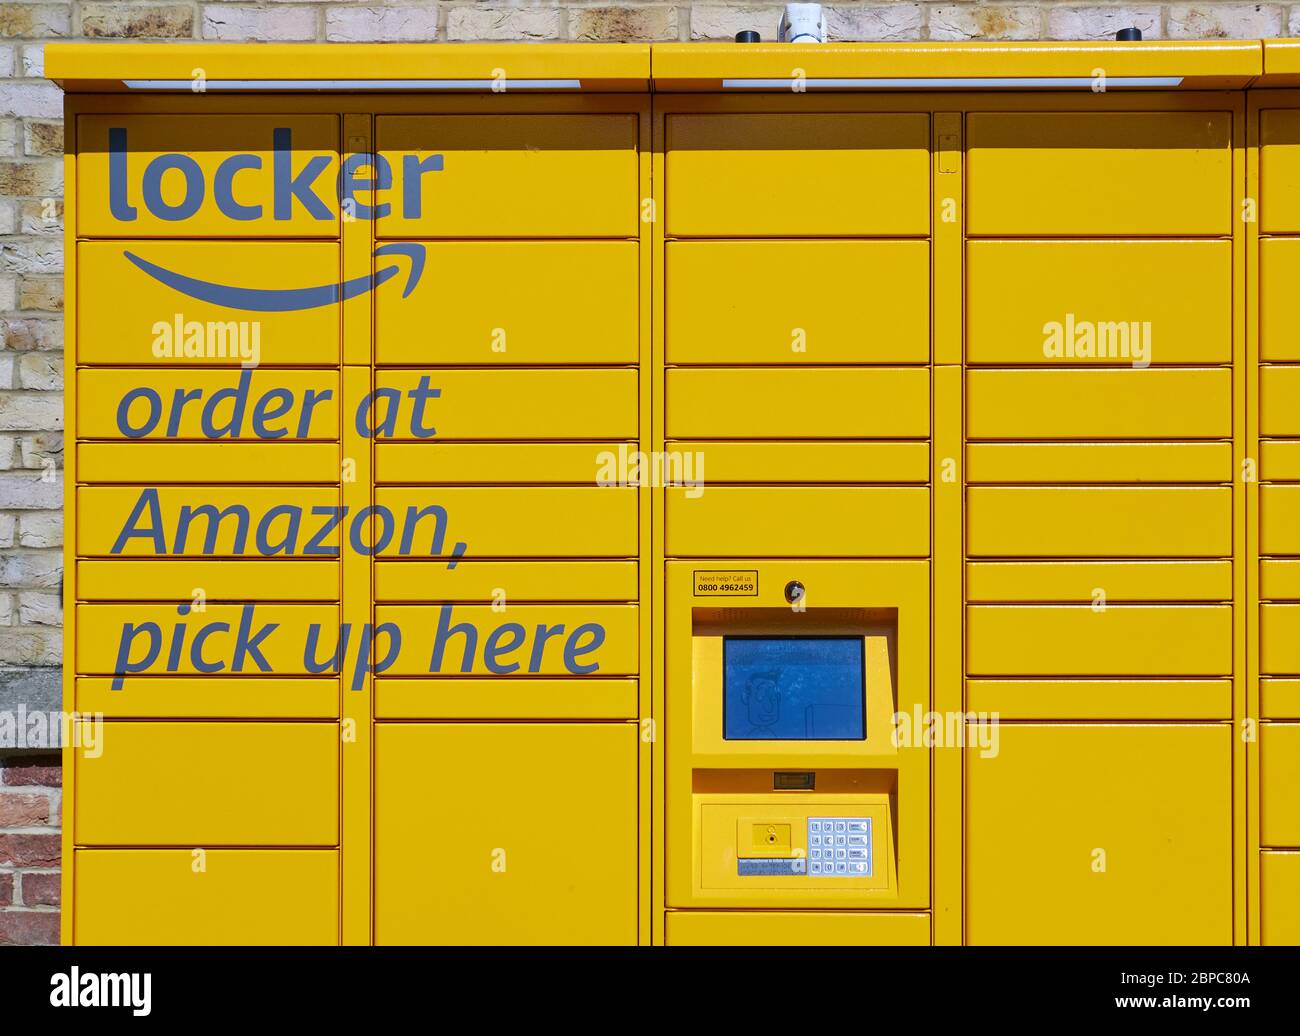 Amazon Locker è un chiosco self-service per la raccolta sicura di ordini online, Amazon.com, Inc è stata fondata da Jeff Bezos nel luglio 1994 Foto Stock